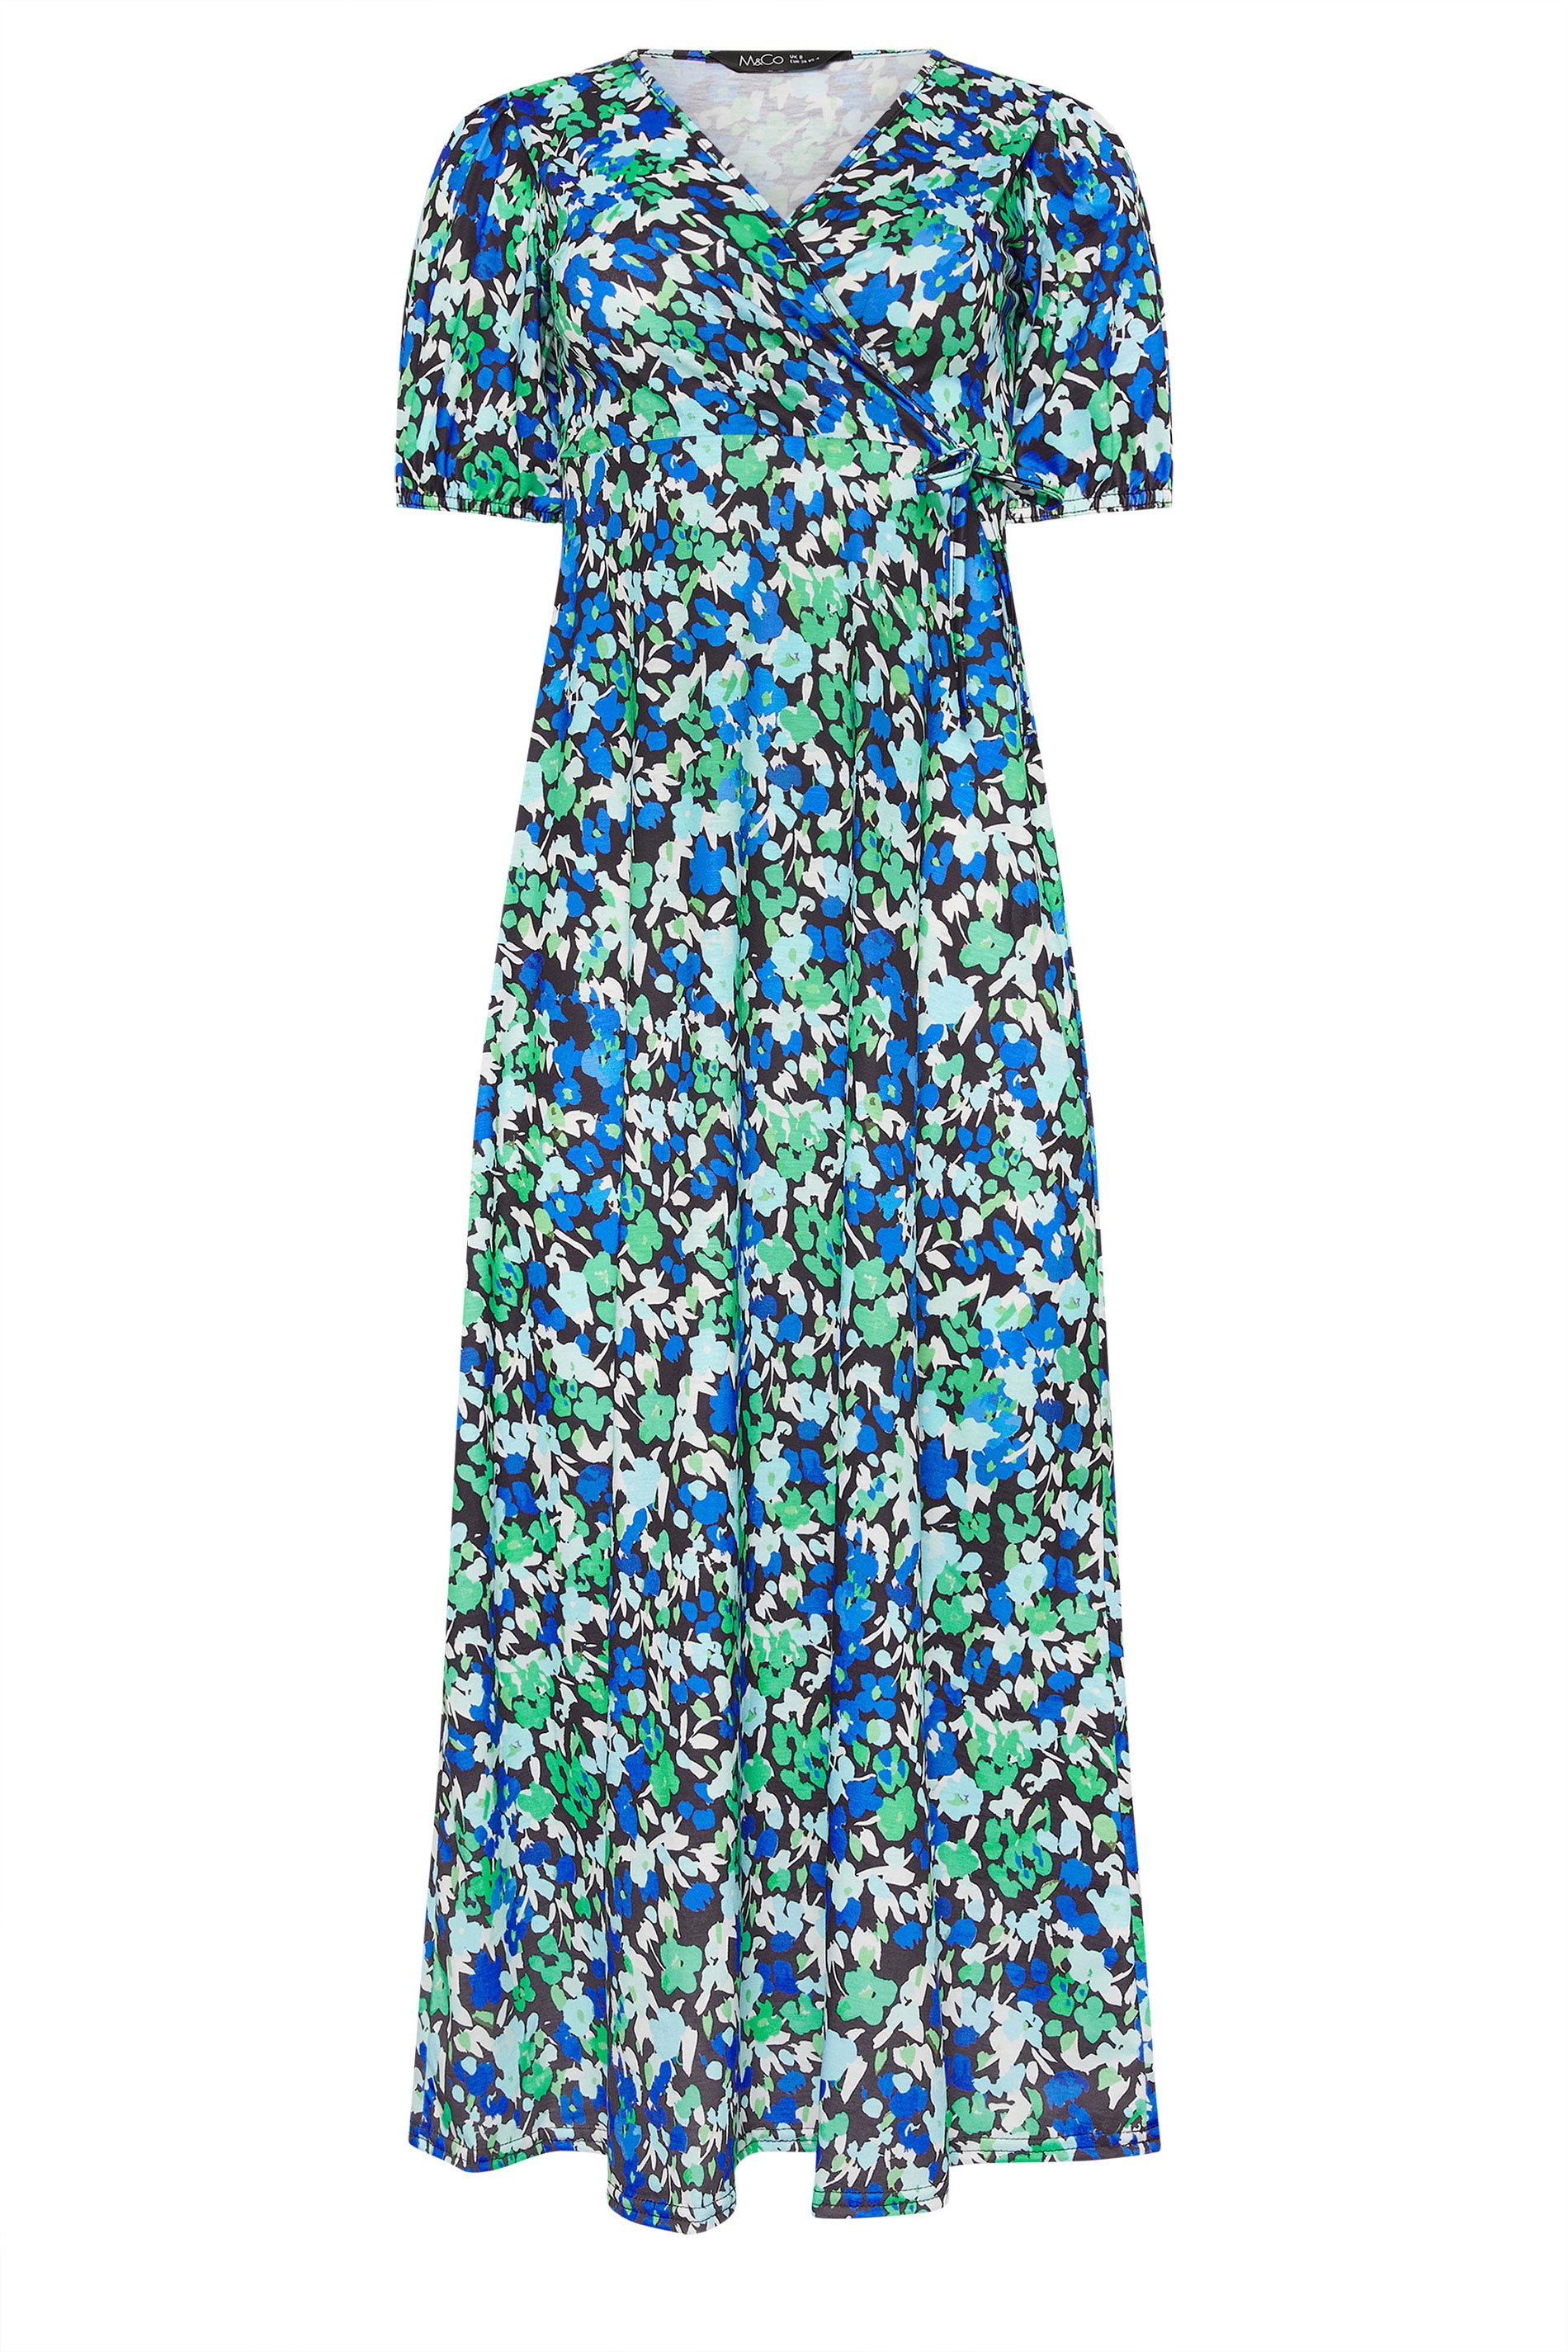 M&Co Petite Black & Blue Floral Print Maxi Dress | M&Co 1